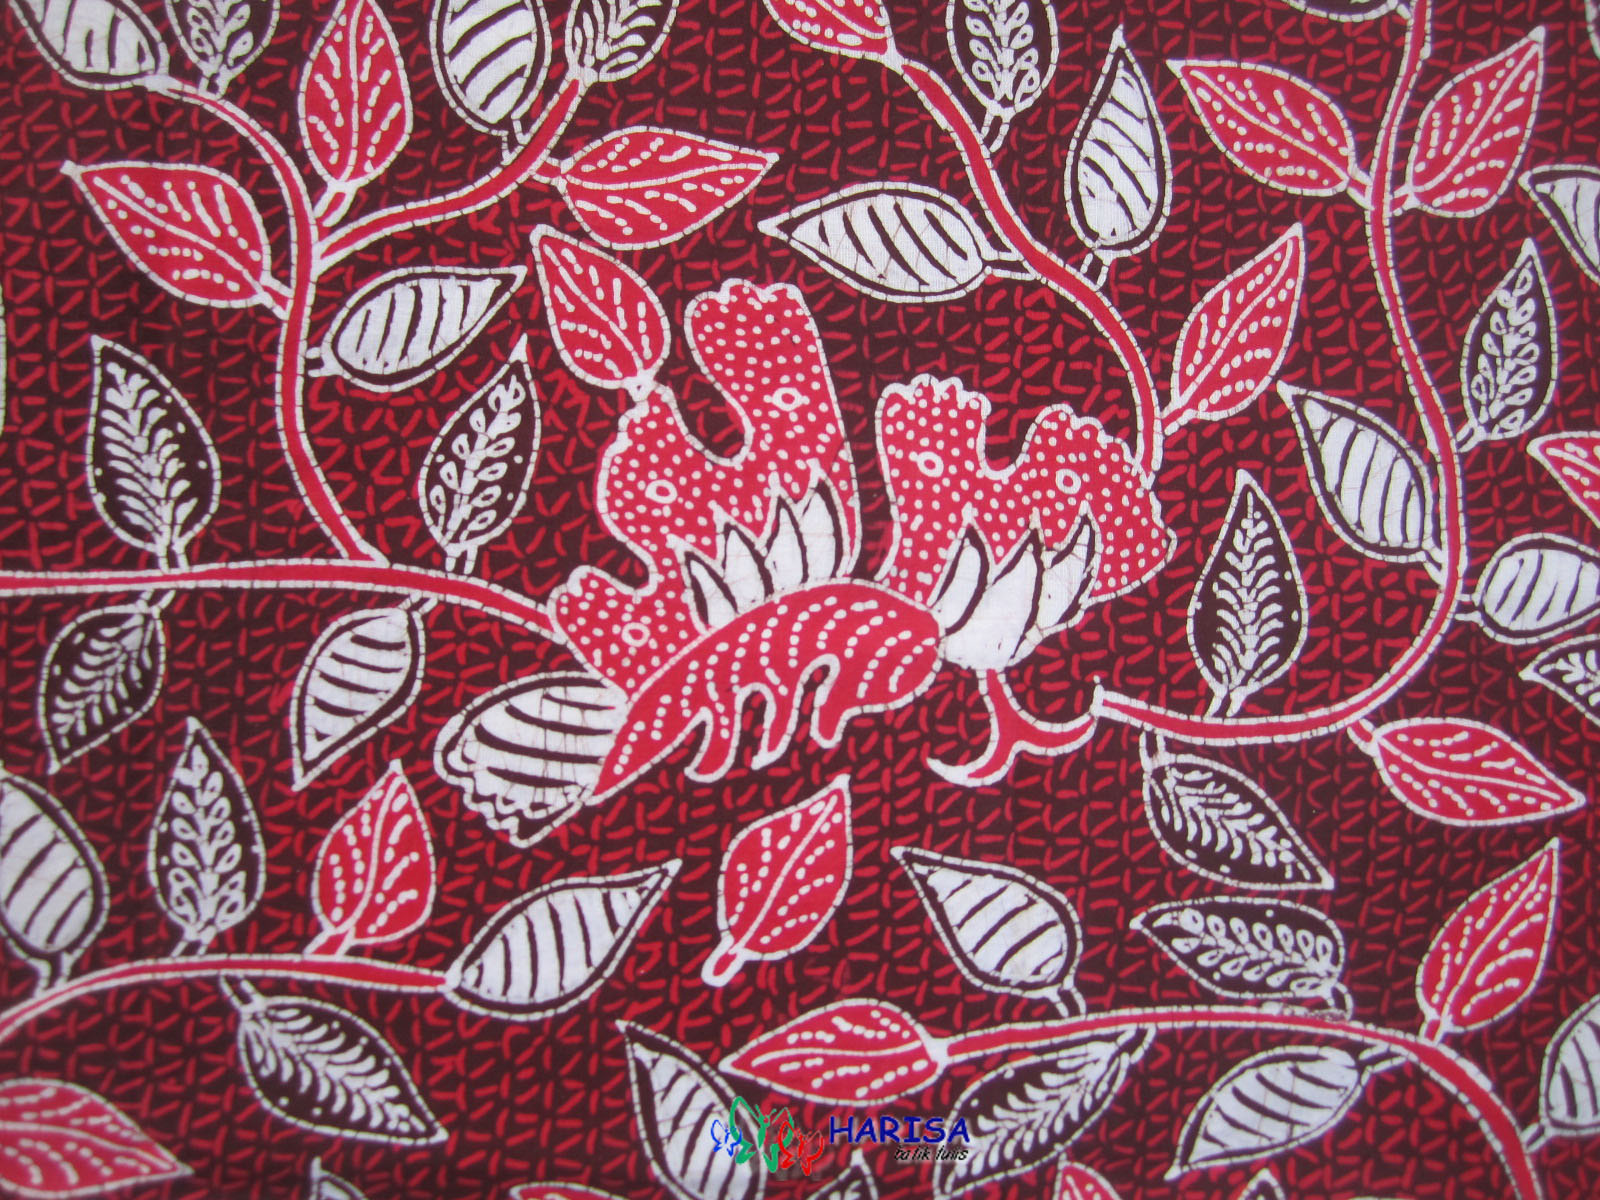 Gambar sketsa flora batik - 28 images - sketsa gambar 